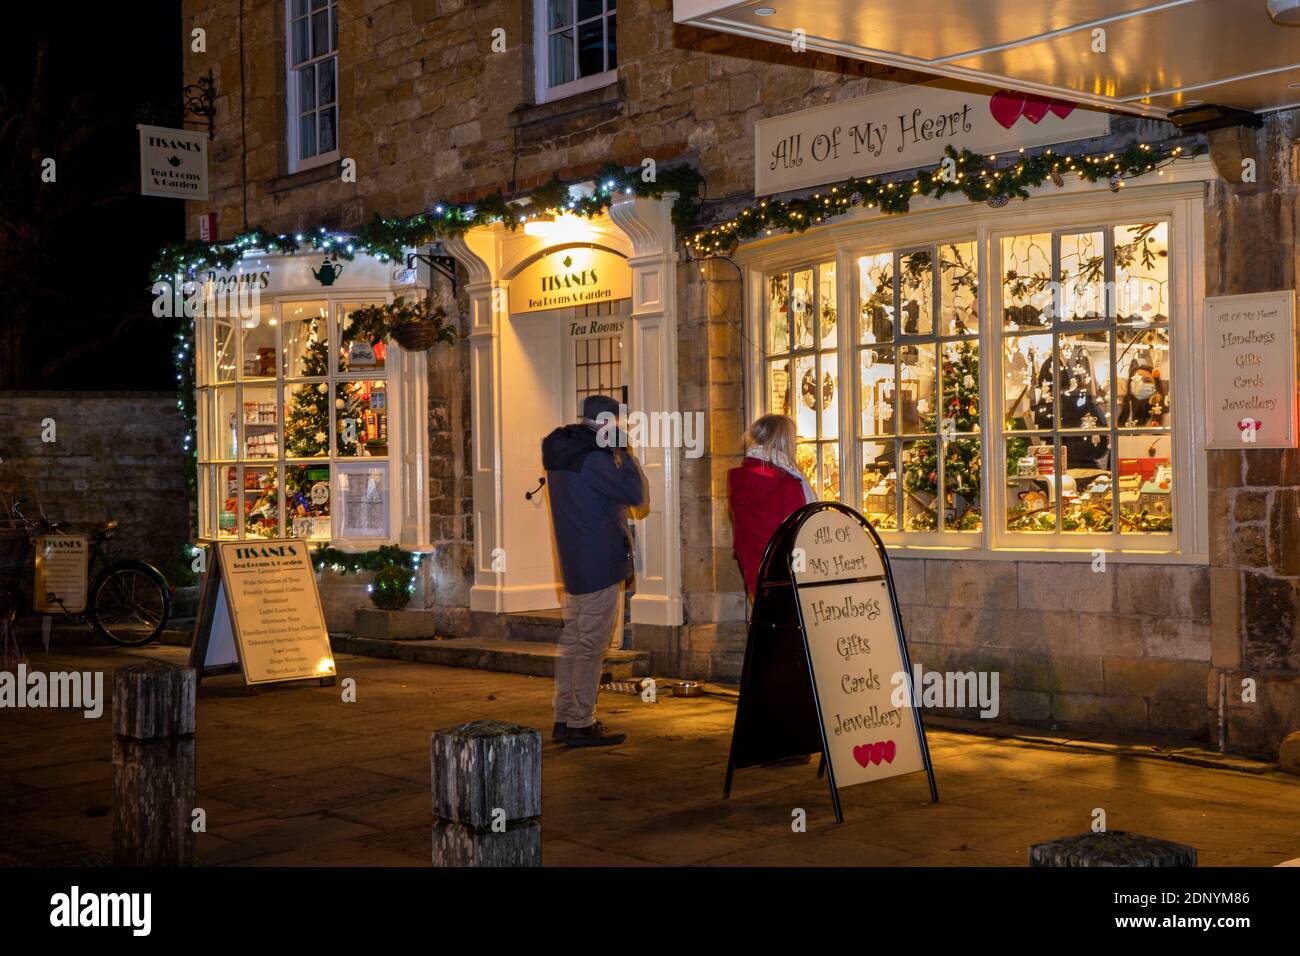 Reino Unido, Gloucestershire, Broadway, The Green, Tea Room de tisanes y la tienda de regalos All of My Heart iluminada para las compras de Navidad de tarde en la noche en el pueblo Foto de stock